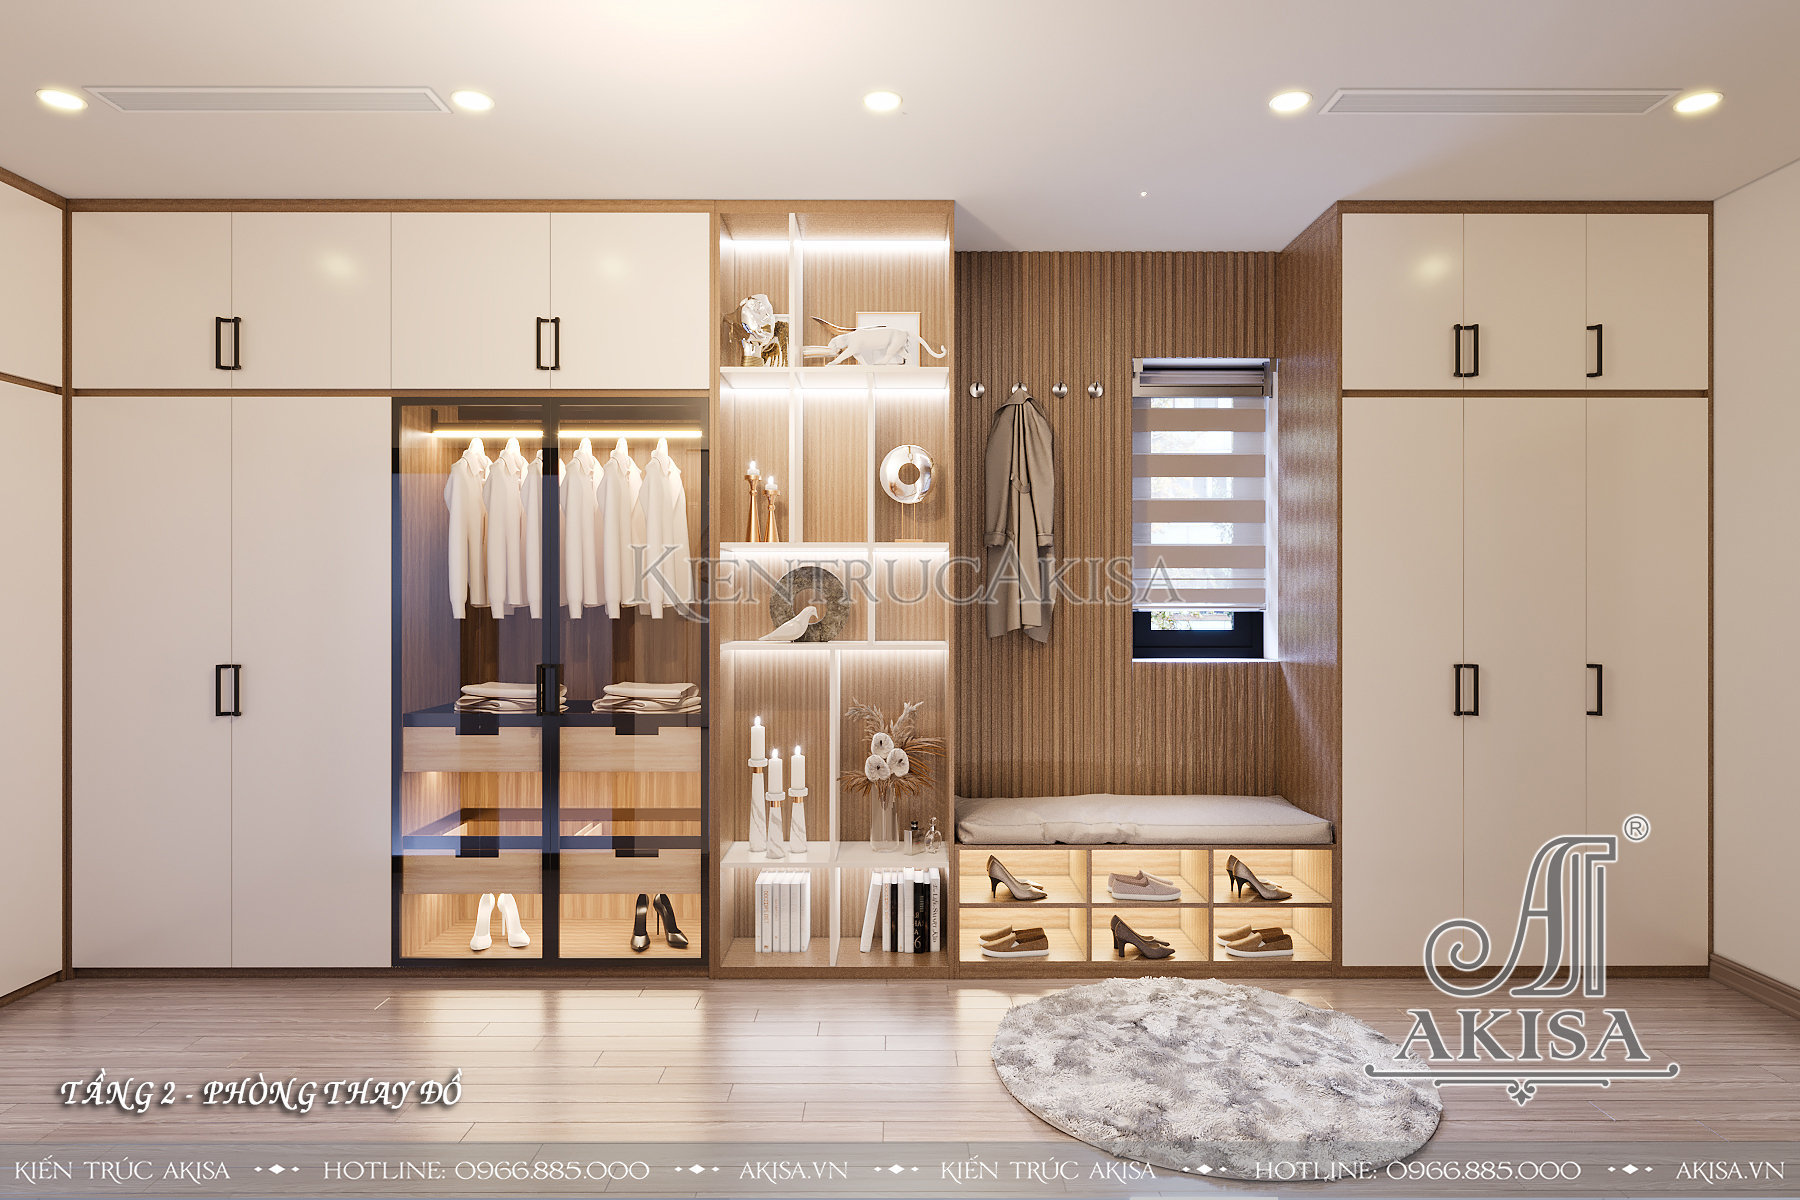 Thiết kế nội thất gỗ công nghiệp phong cách hiện đại - Phòng thay đồ